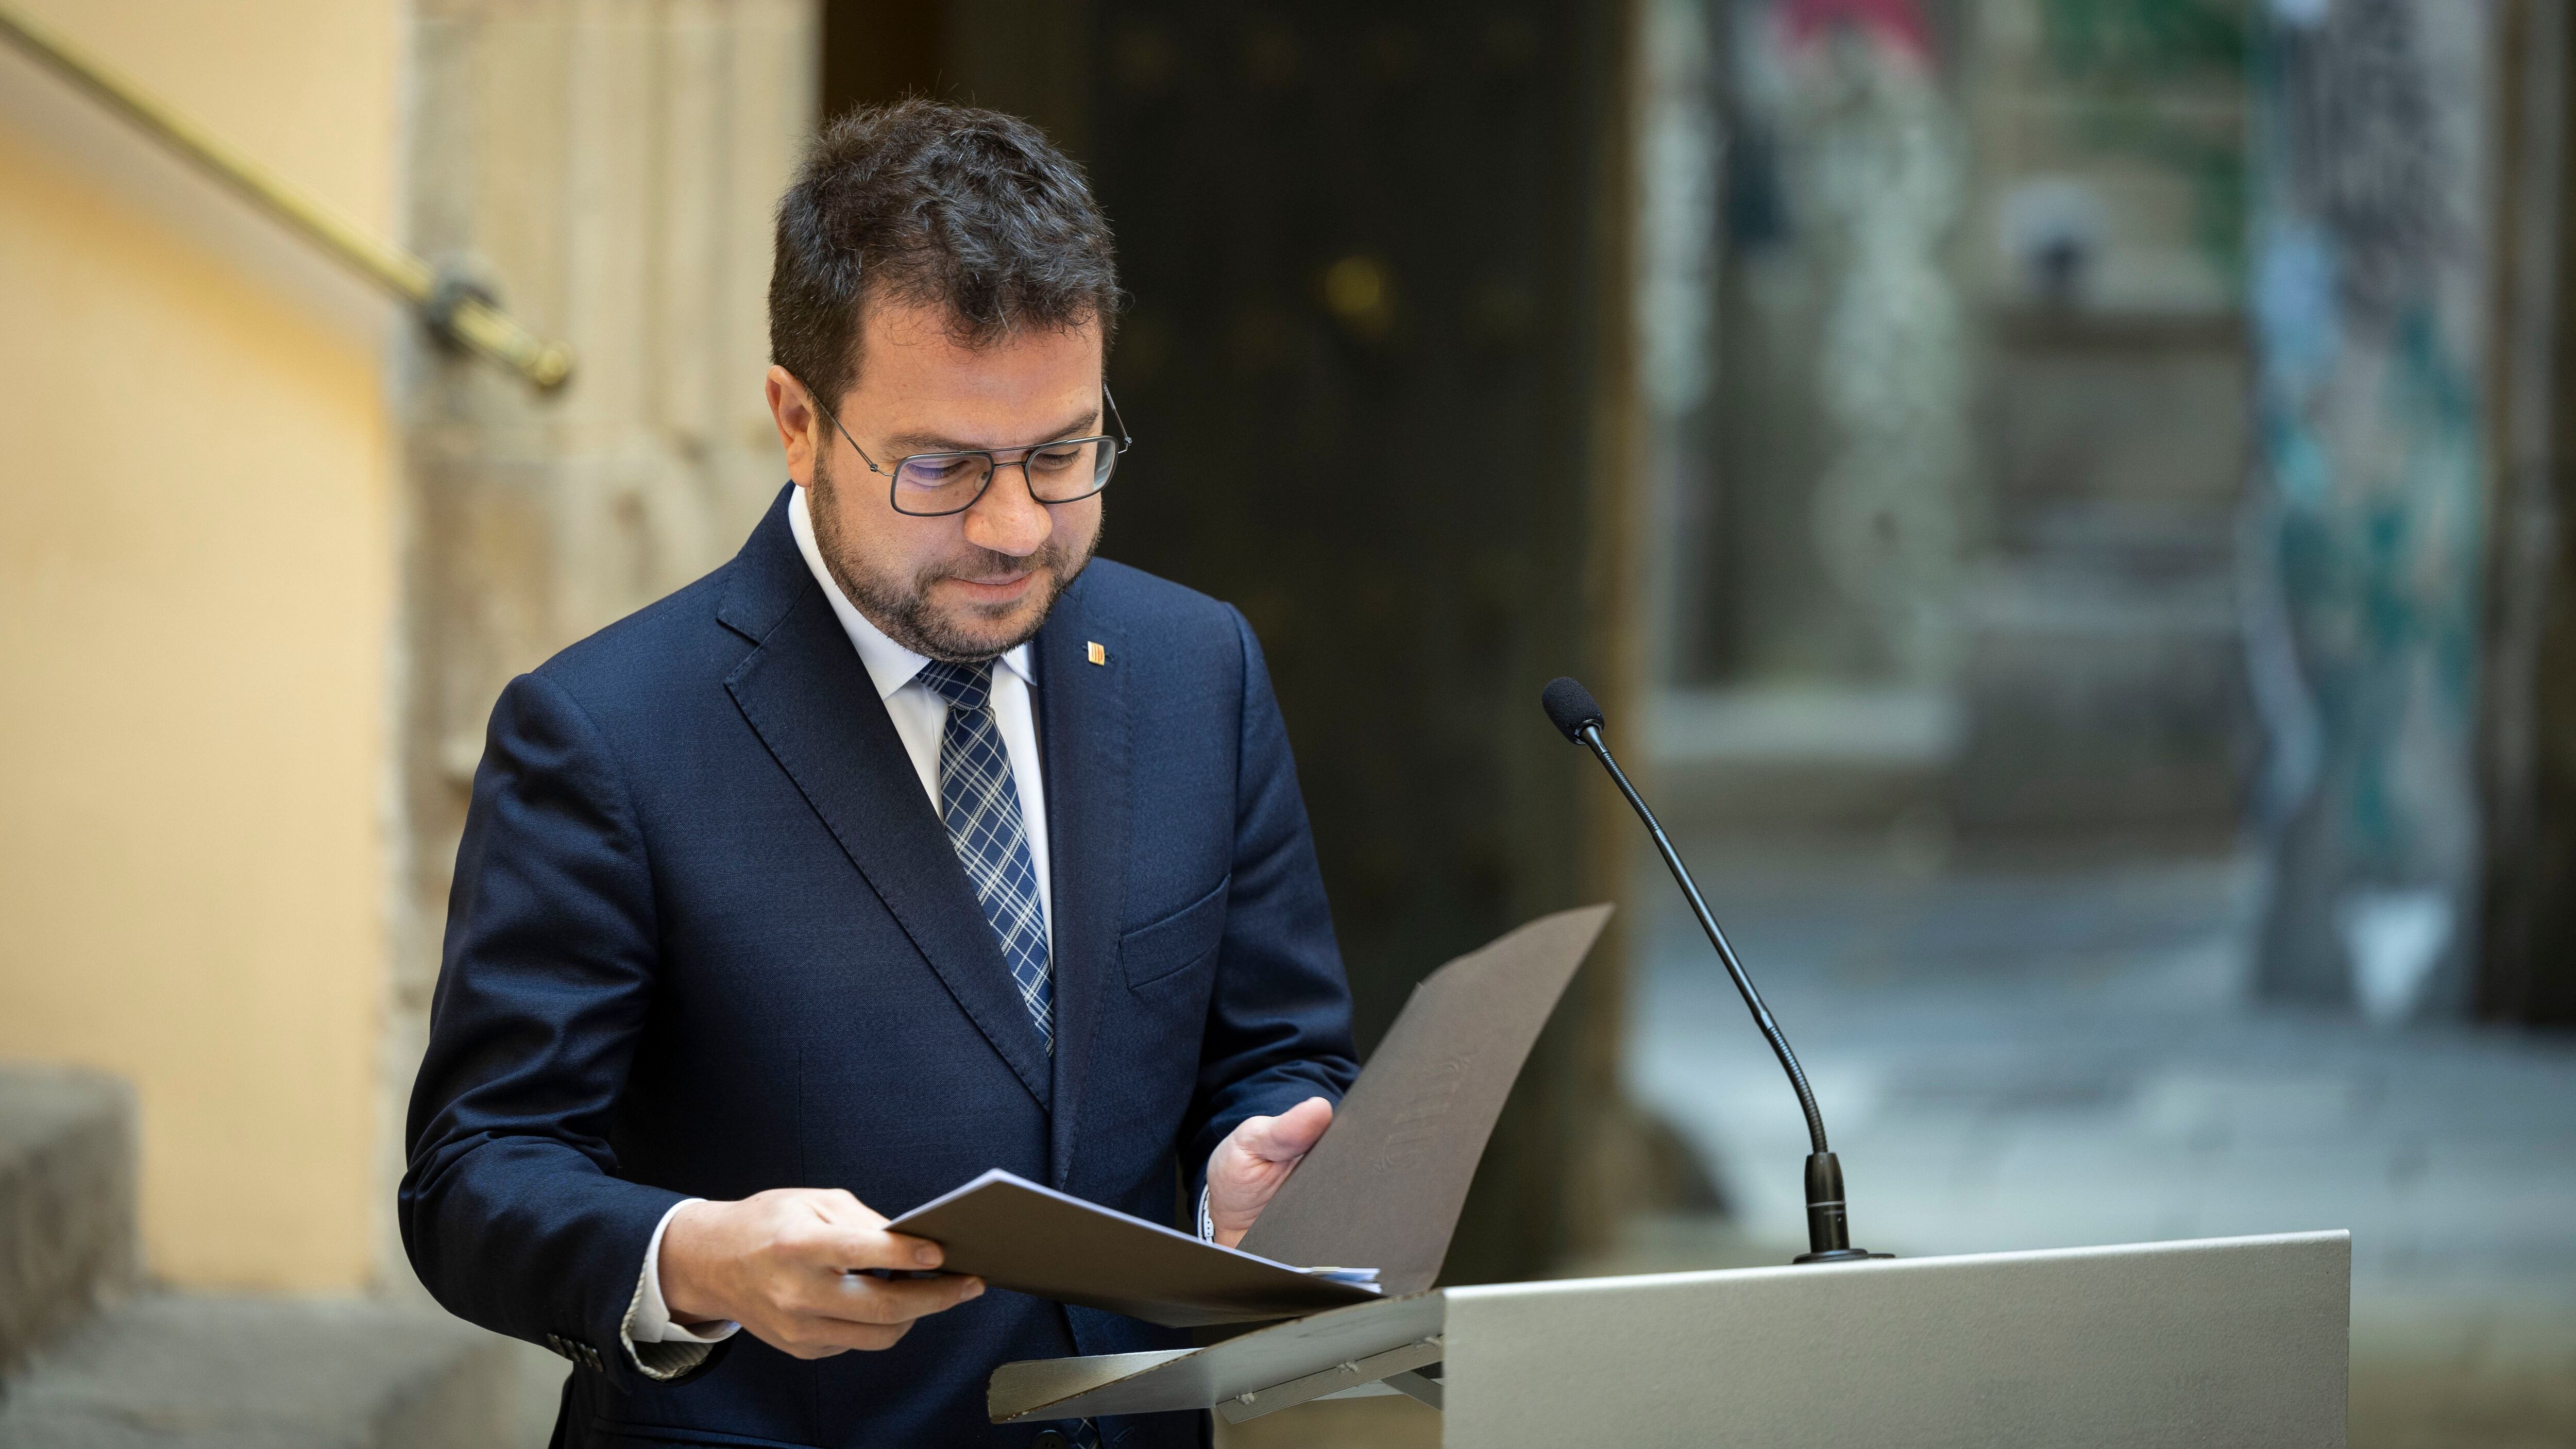 Aragonès acudirá al Senado a defender la amnistía: “Trolear al PP siempre apetece”